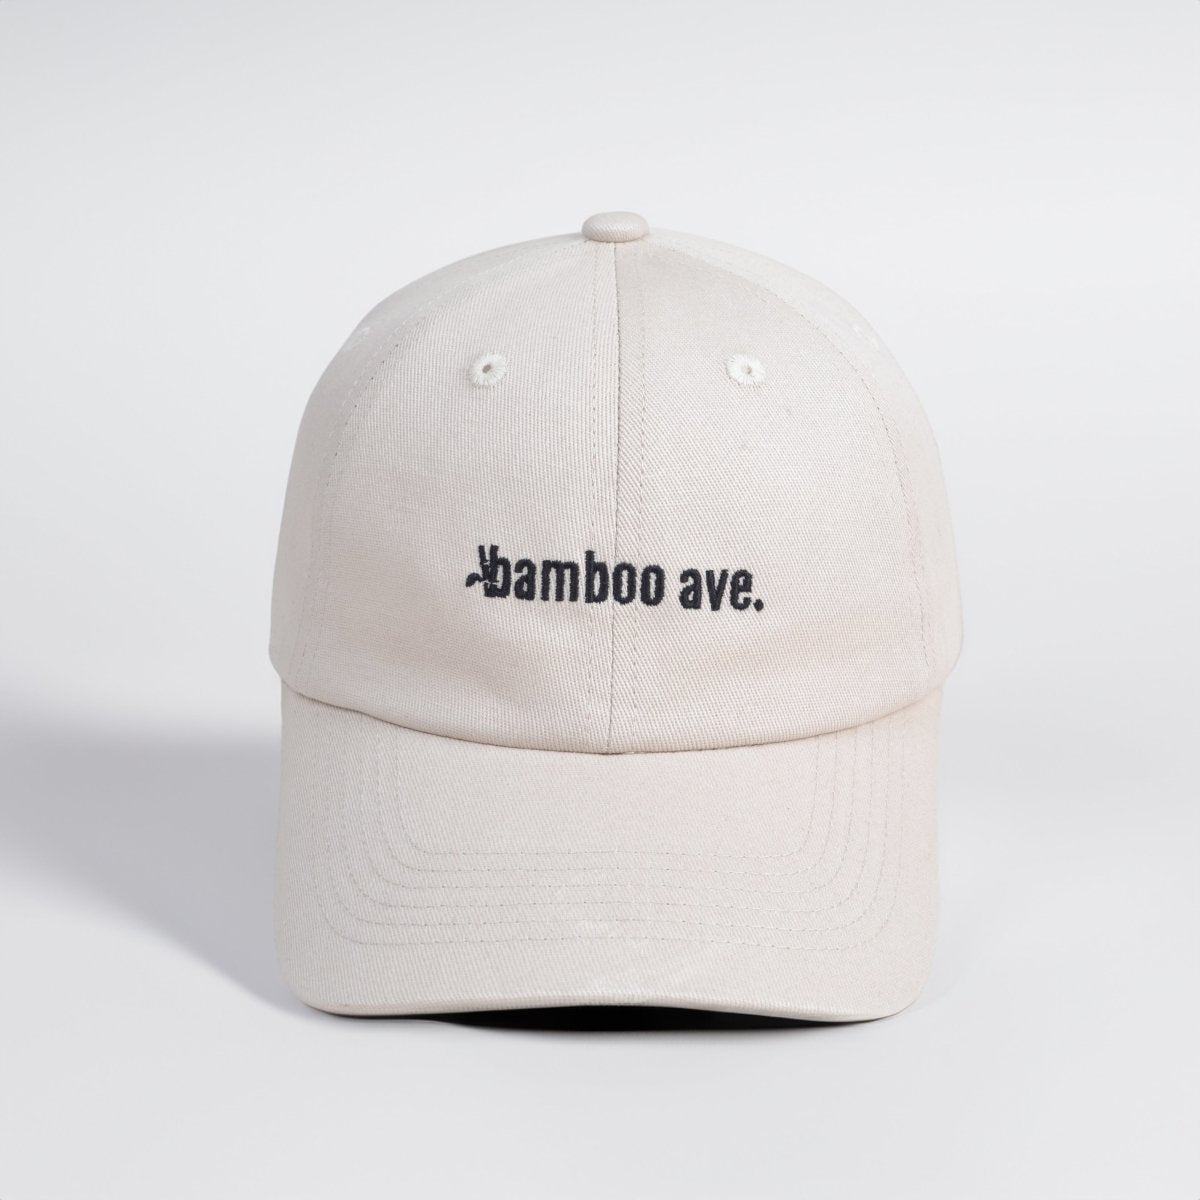 Bamboo Ave Cap - Tan - Bamboo Ave. -